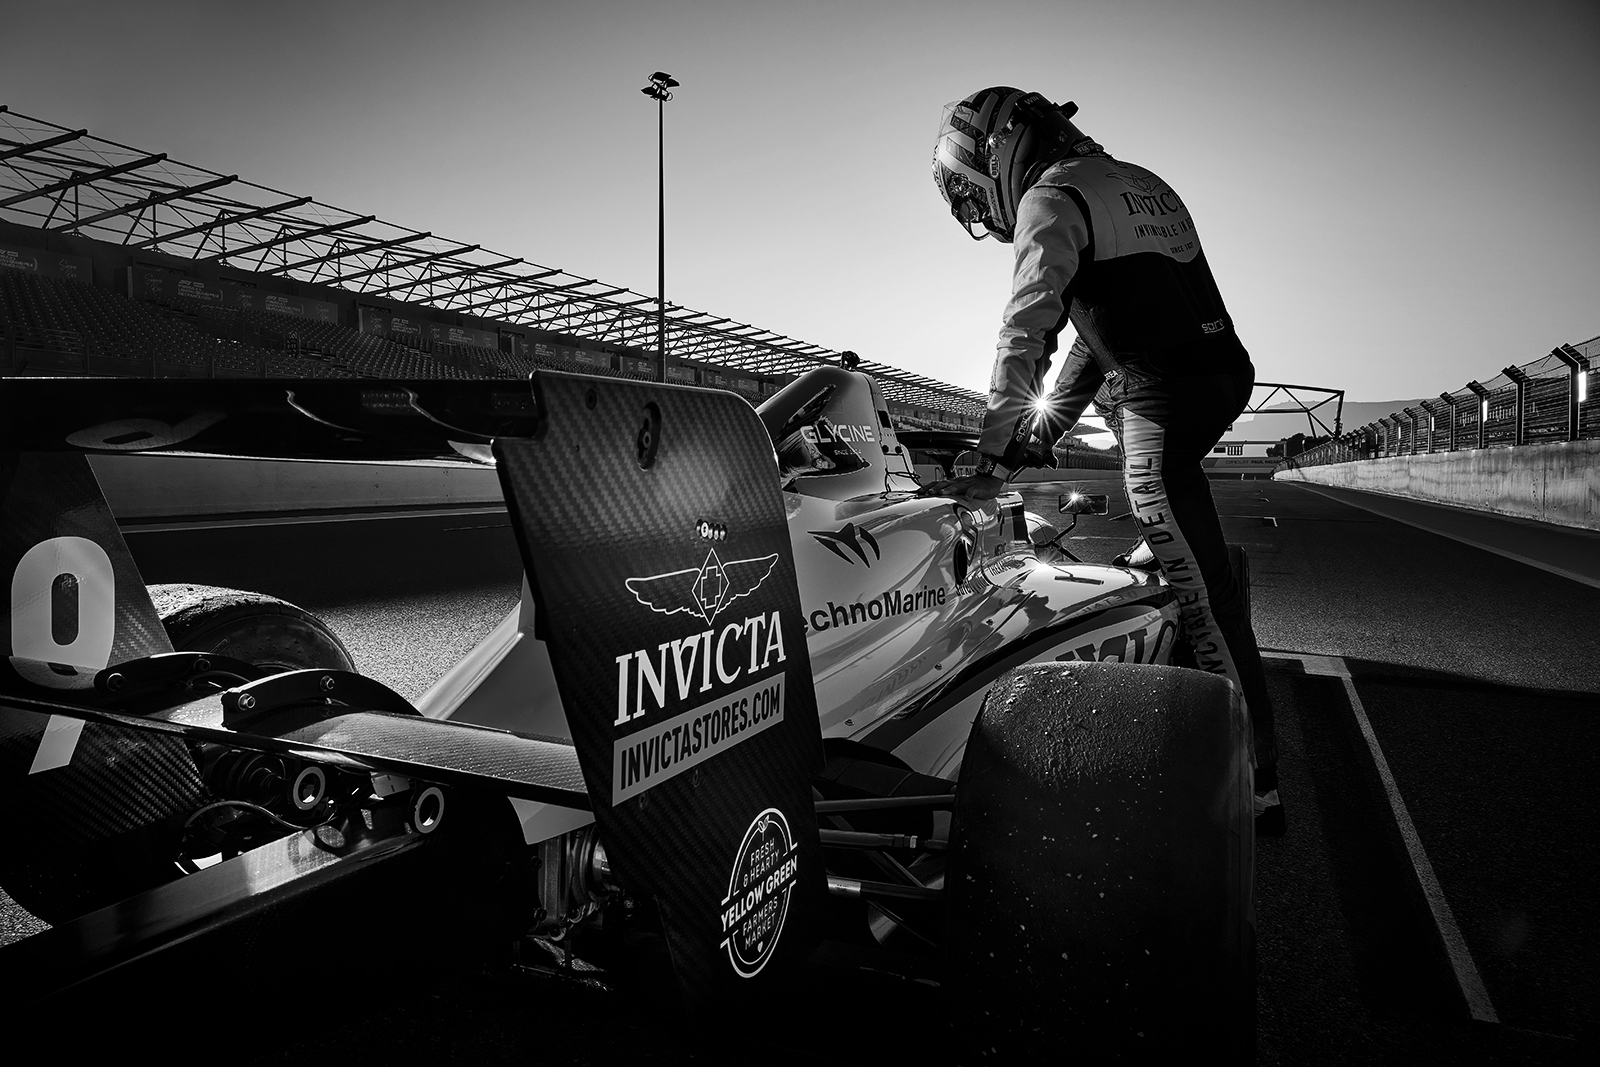 Juan Manuel Correa steps into Invicta racing car